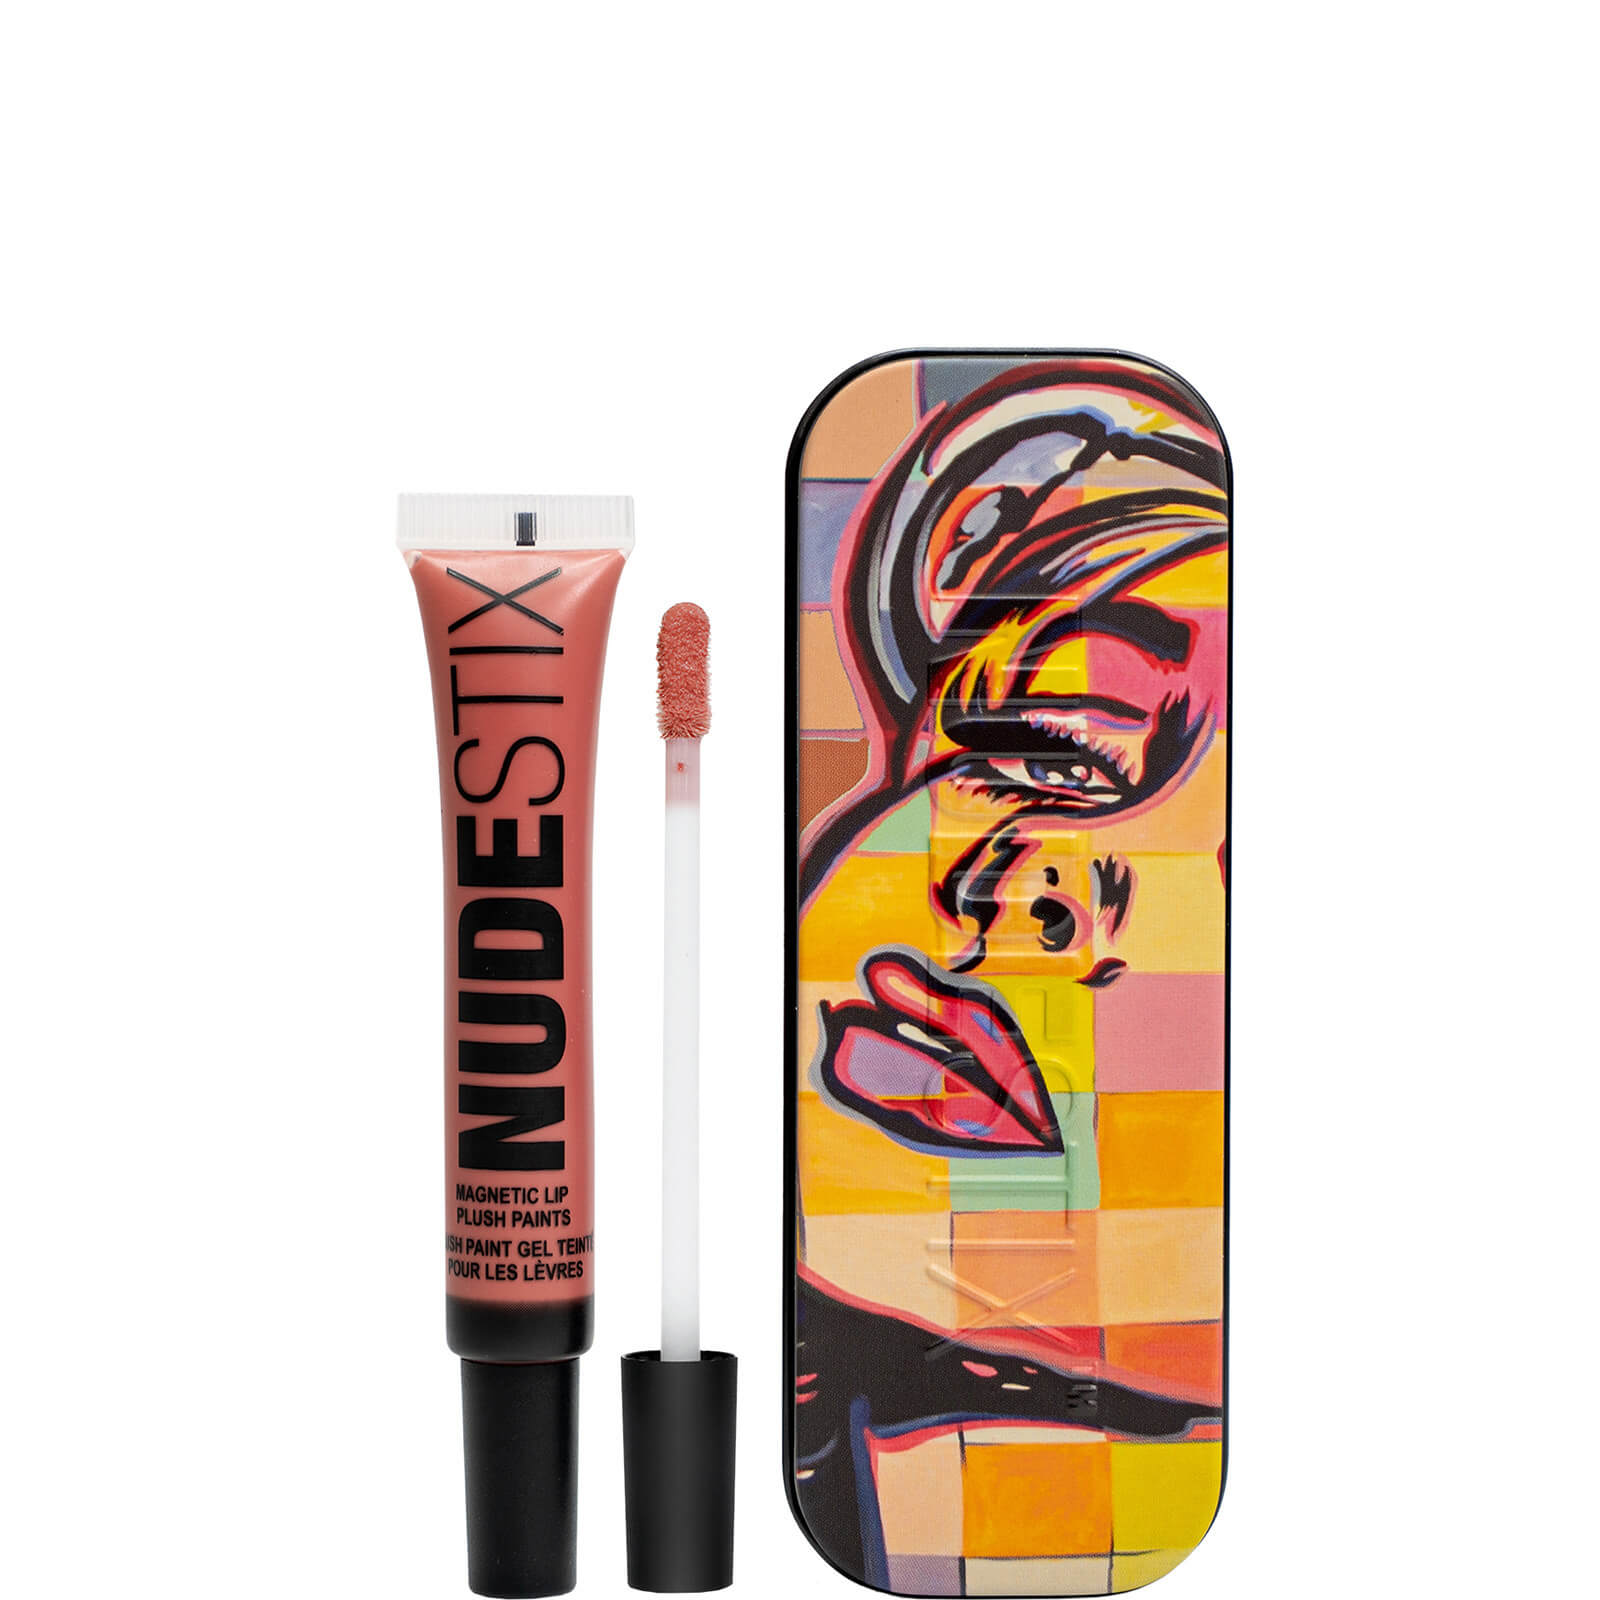 NUDESTIX Magnetic Lip Plush Paints 10ml (Various Shades) - Waikiki Rose